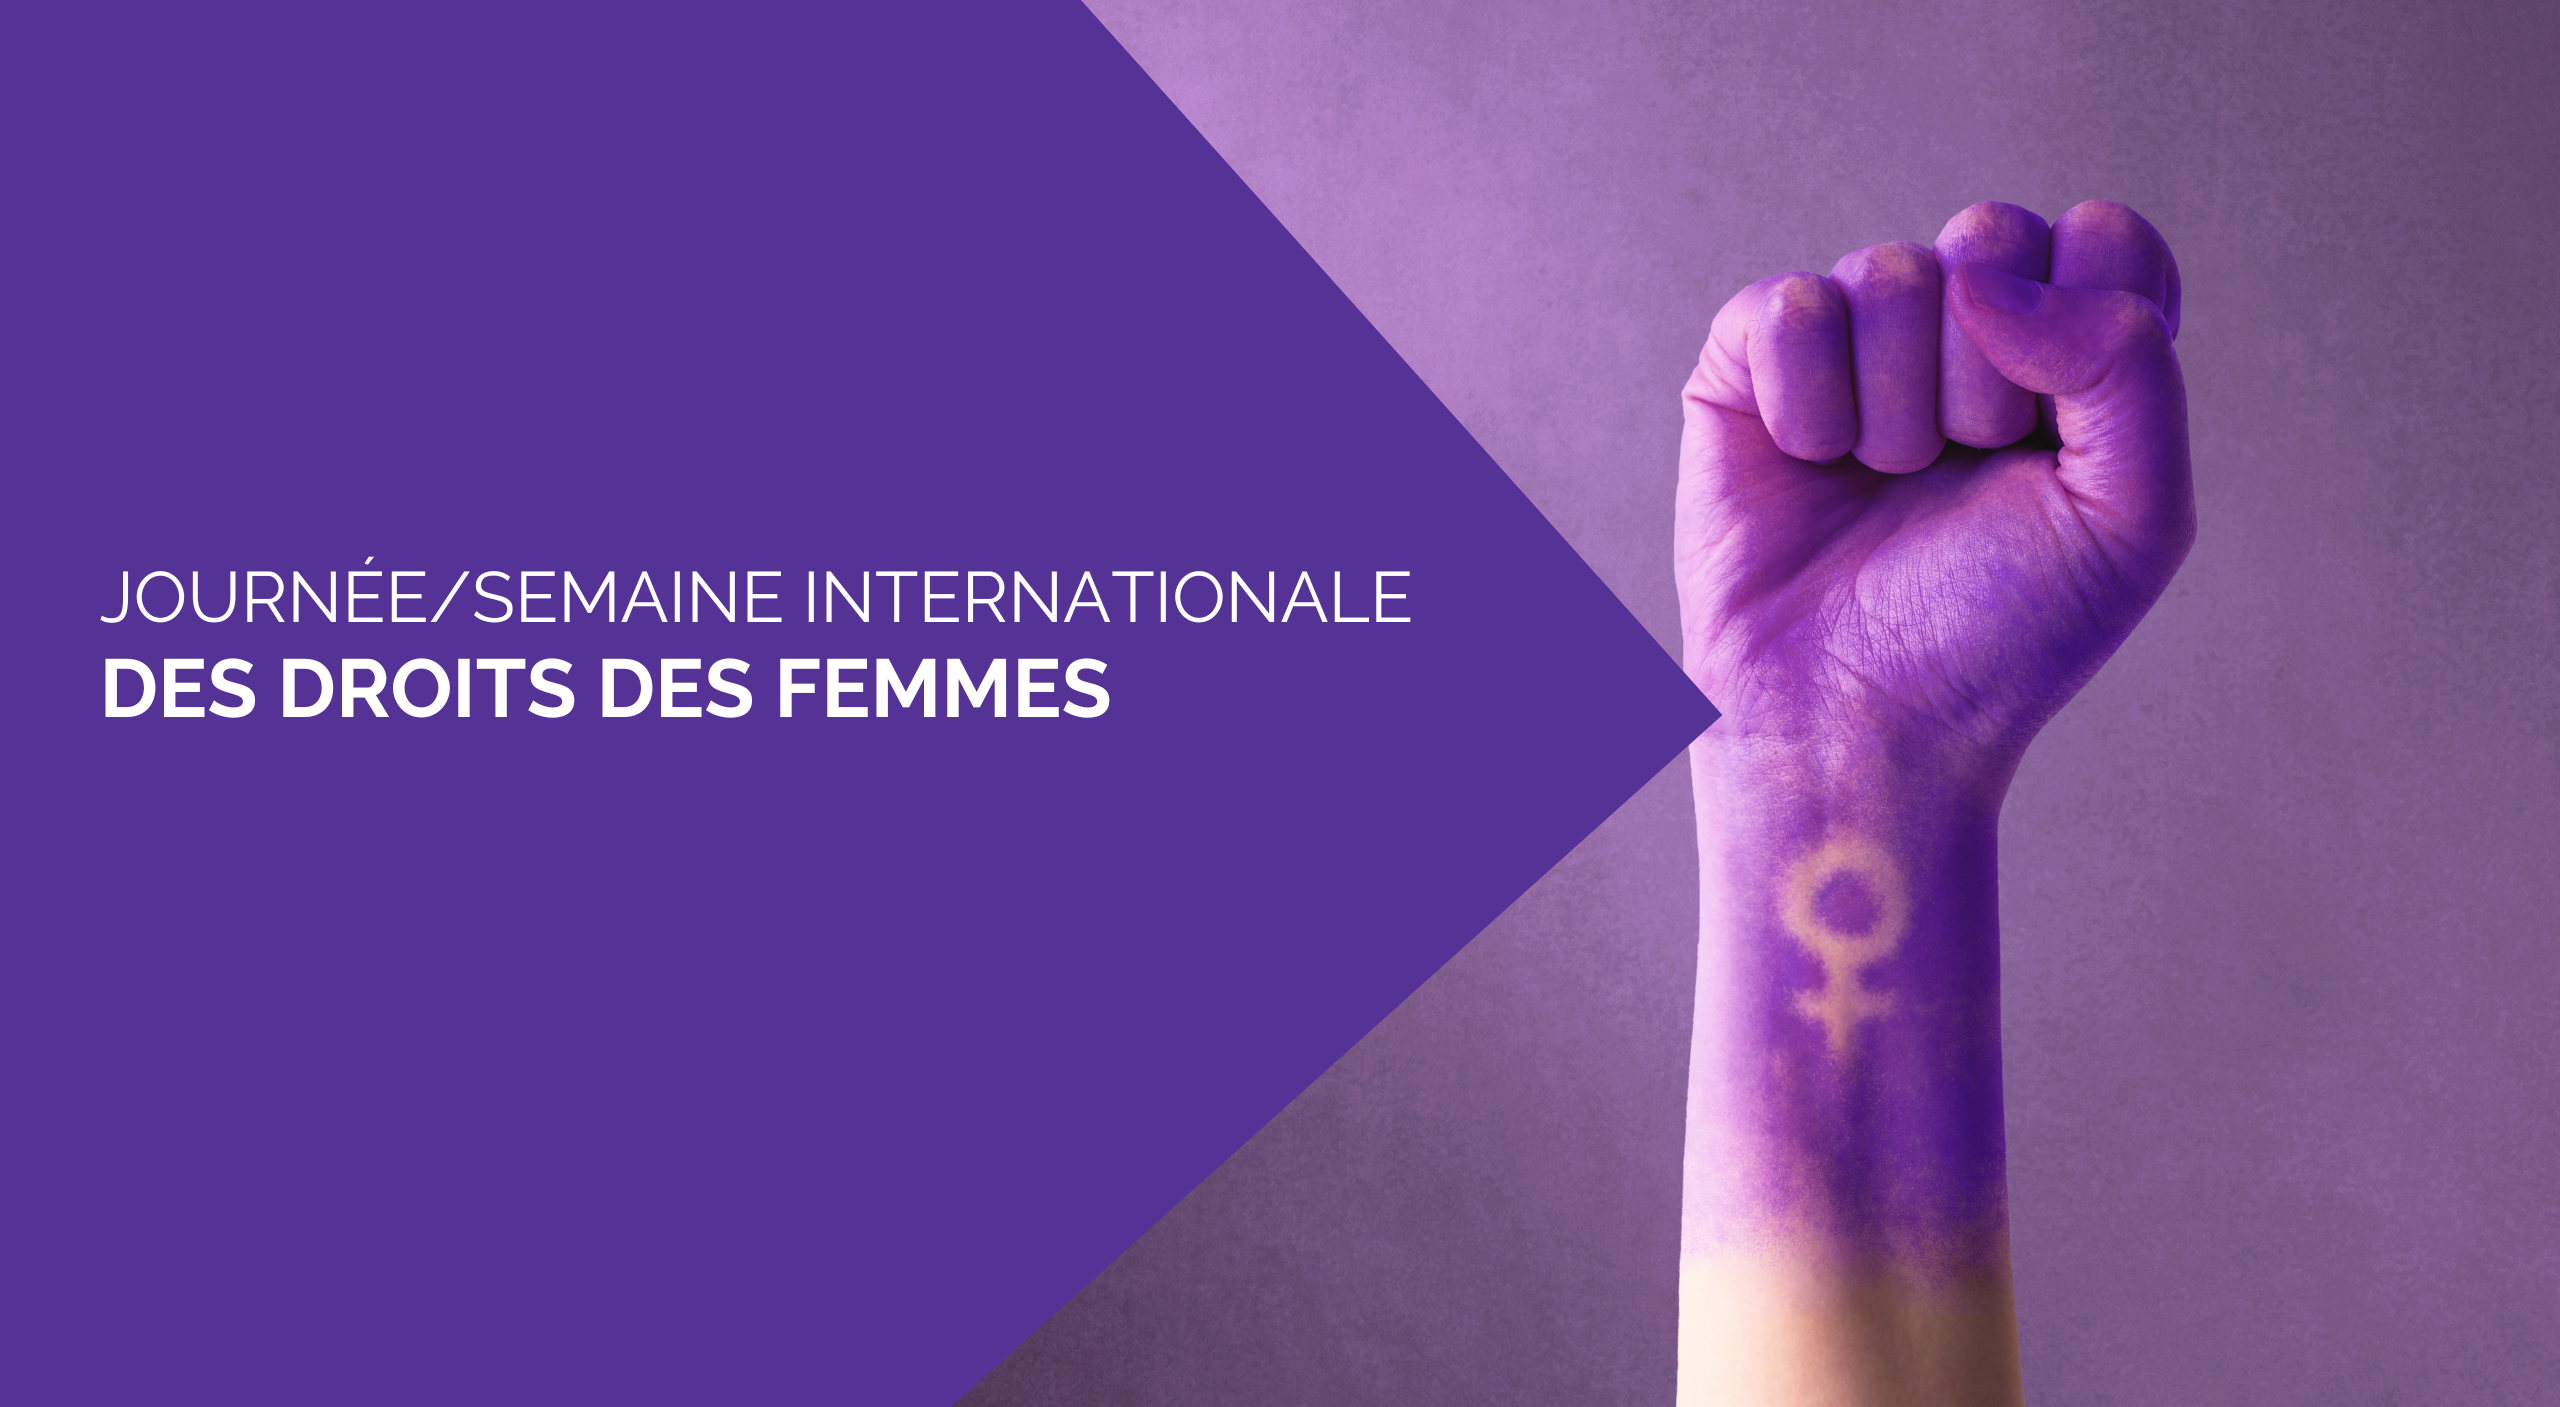 Semaine Internationale des droits des femmes